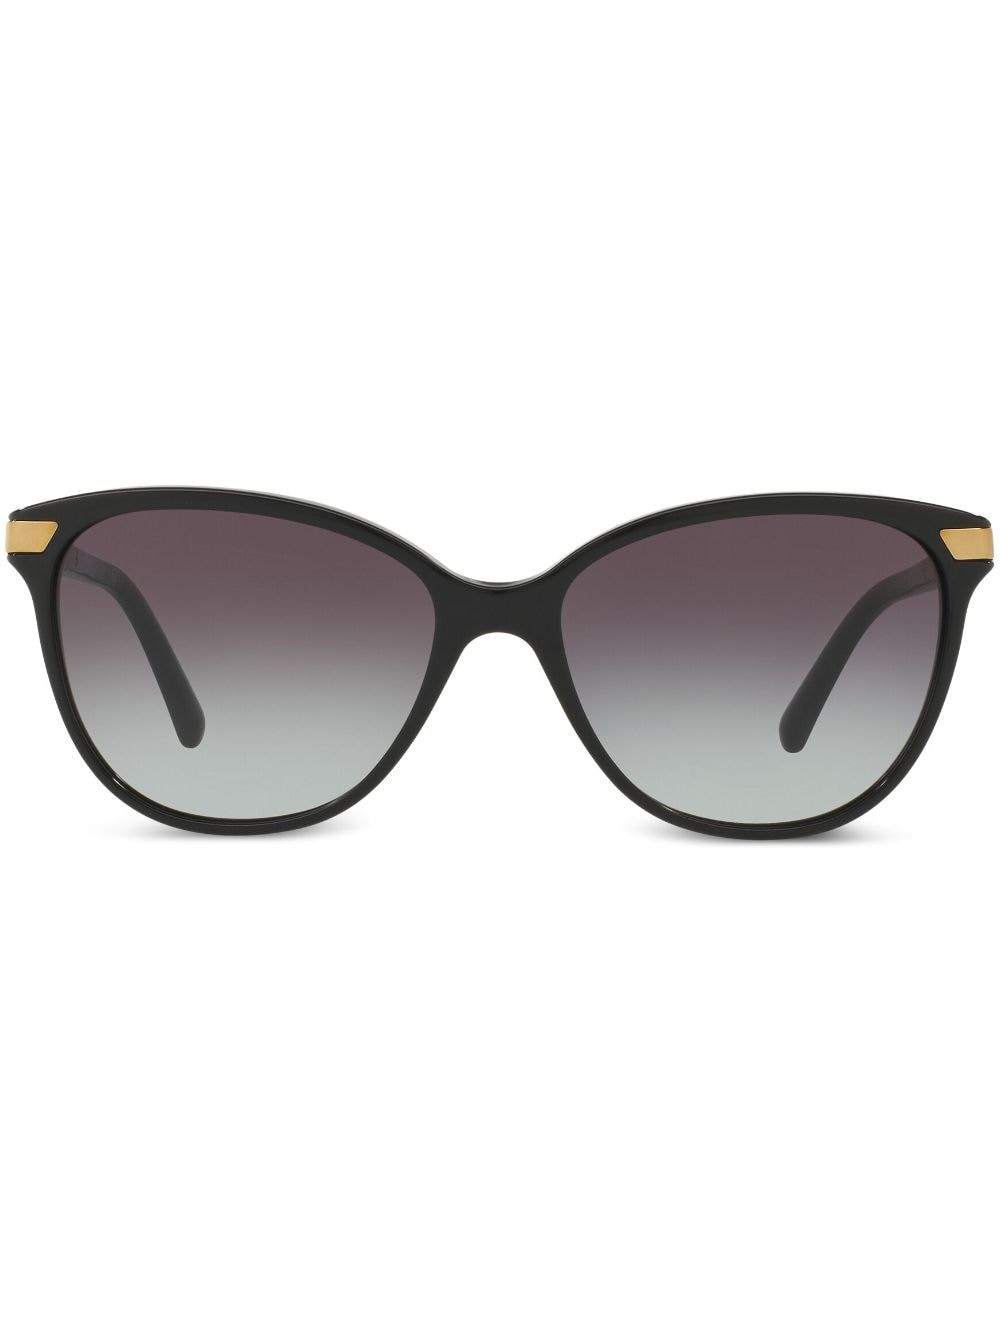 Burberry Eyewear check detail round sunglasses - Black von Burberry Eyewear